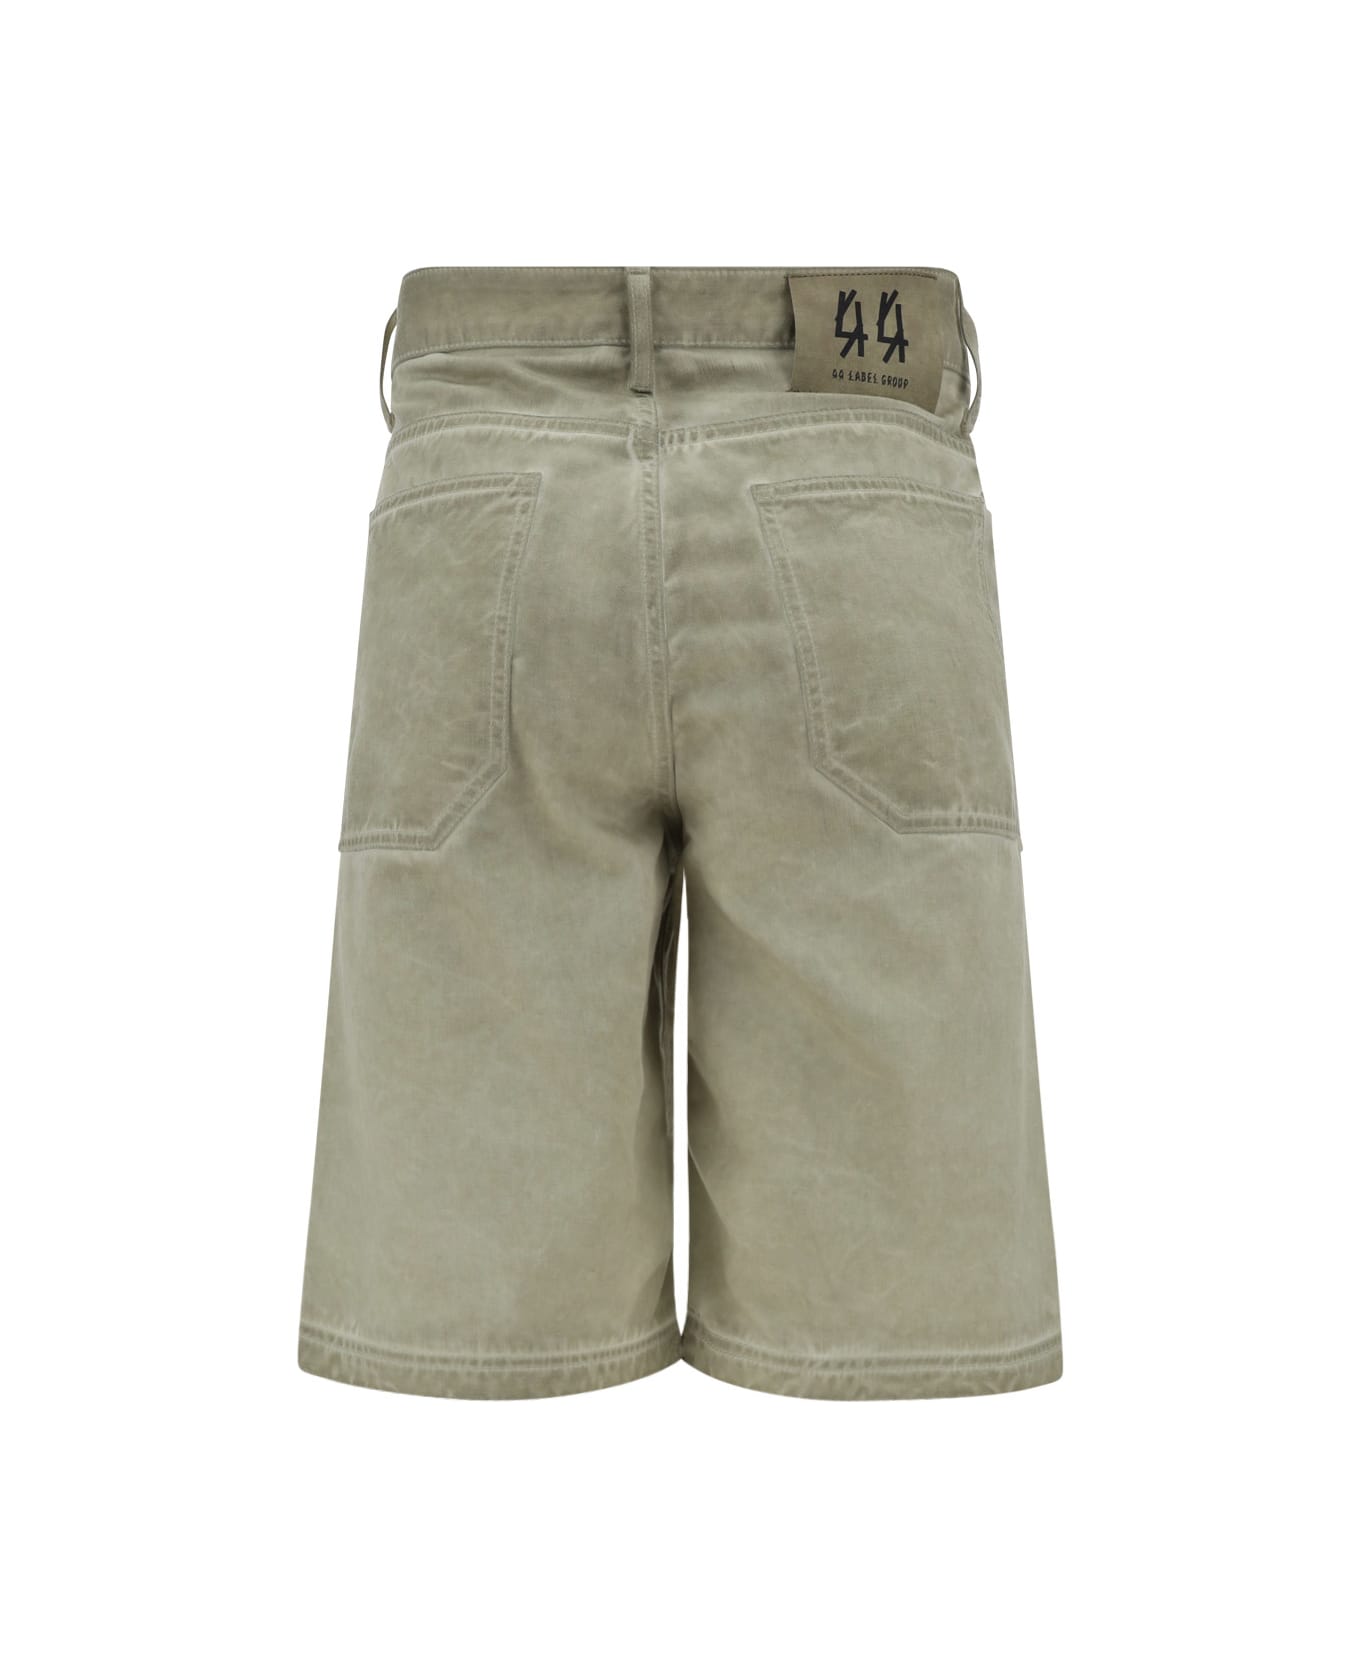 44 Label Group Short Pants - Sabbia